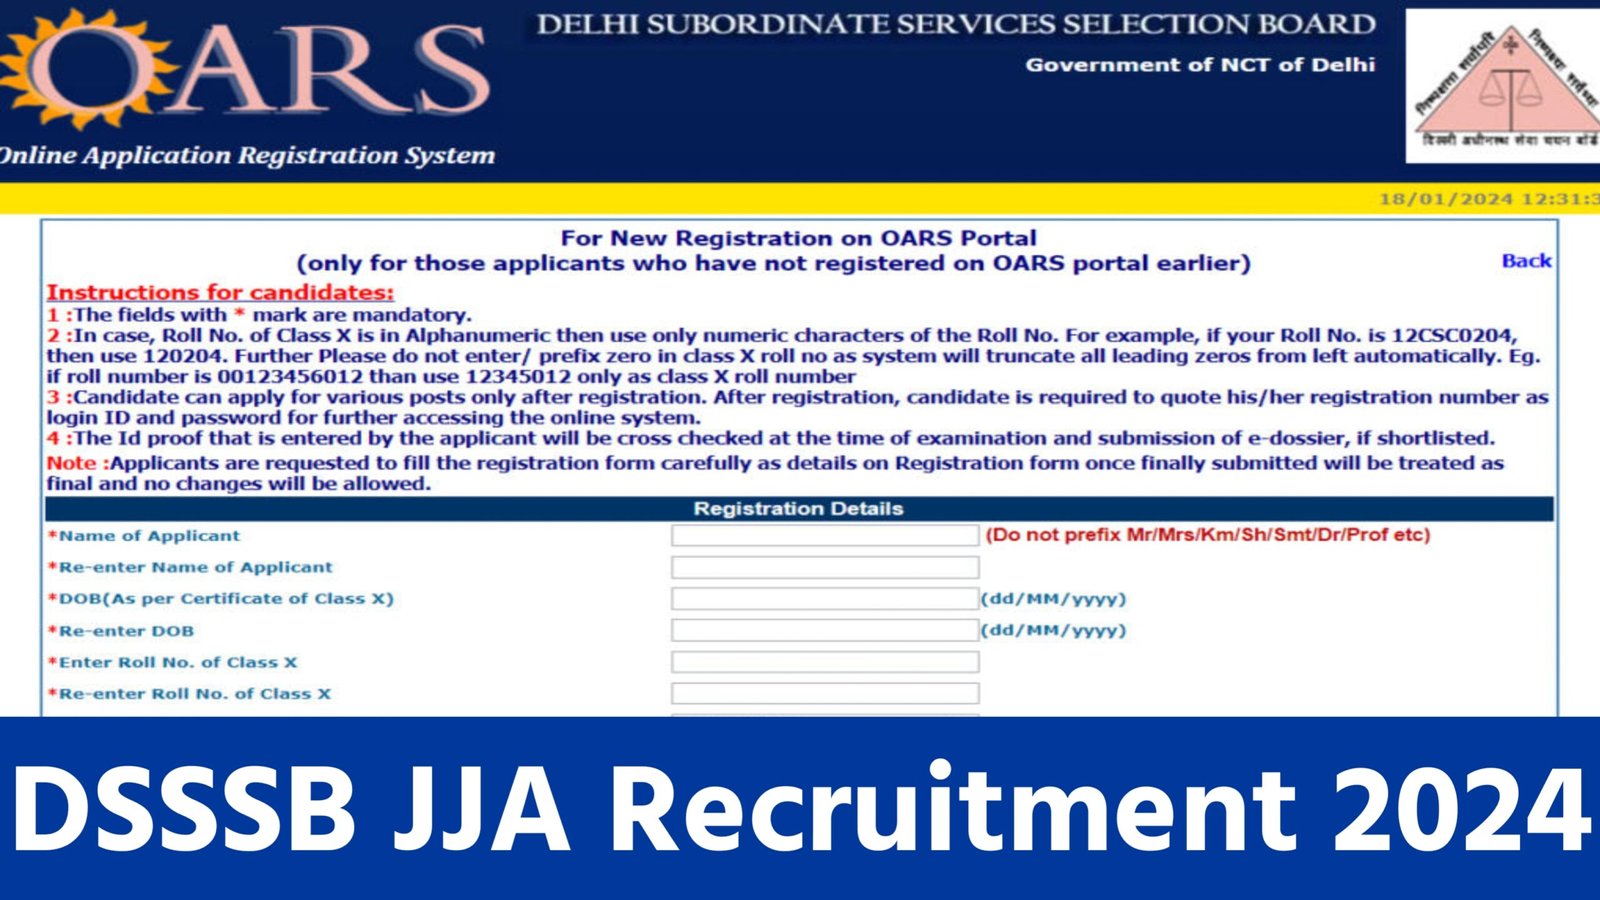 DSSSB JJA Recruitment 2024